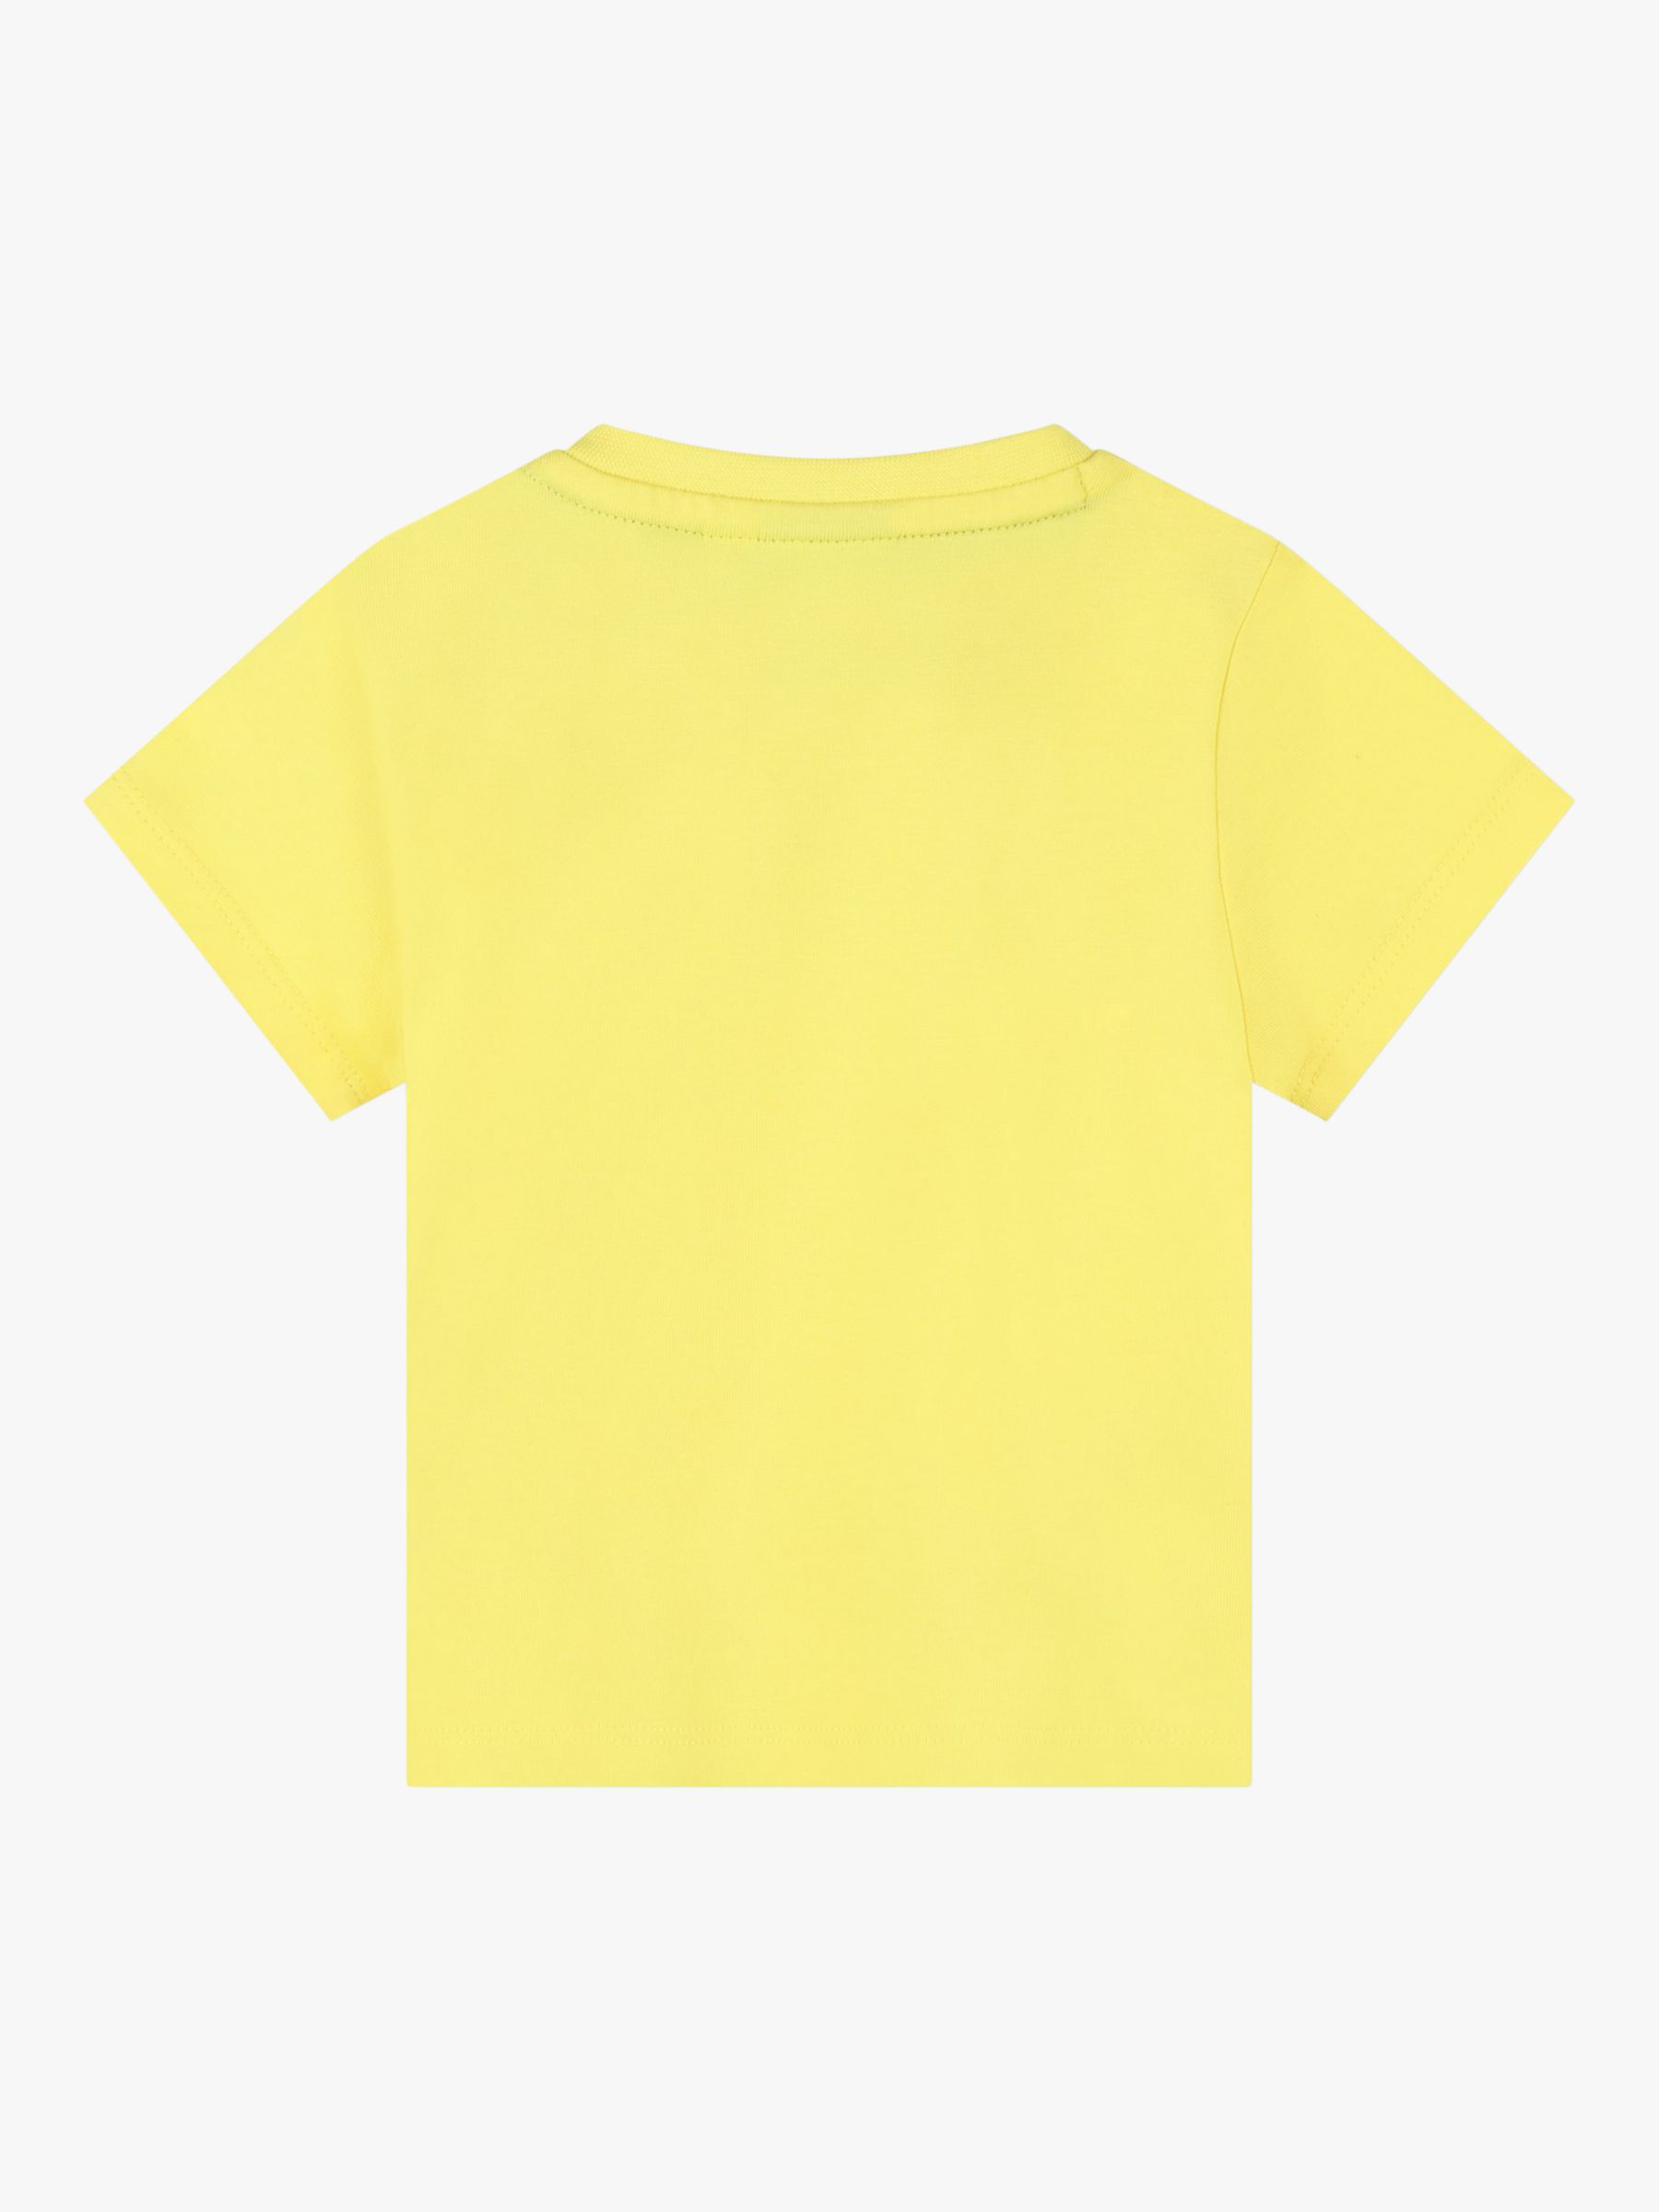 BOSS Baby Short Sleeve T-Shirt, Yellow, 2 years